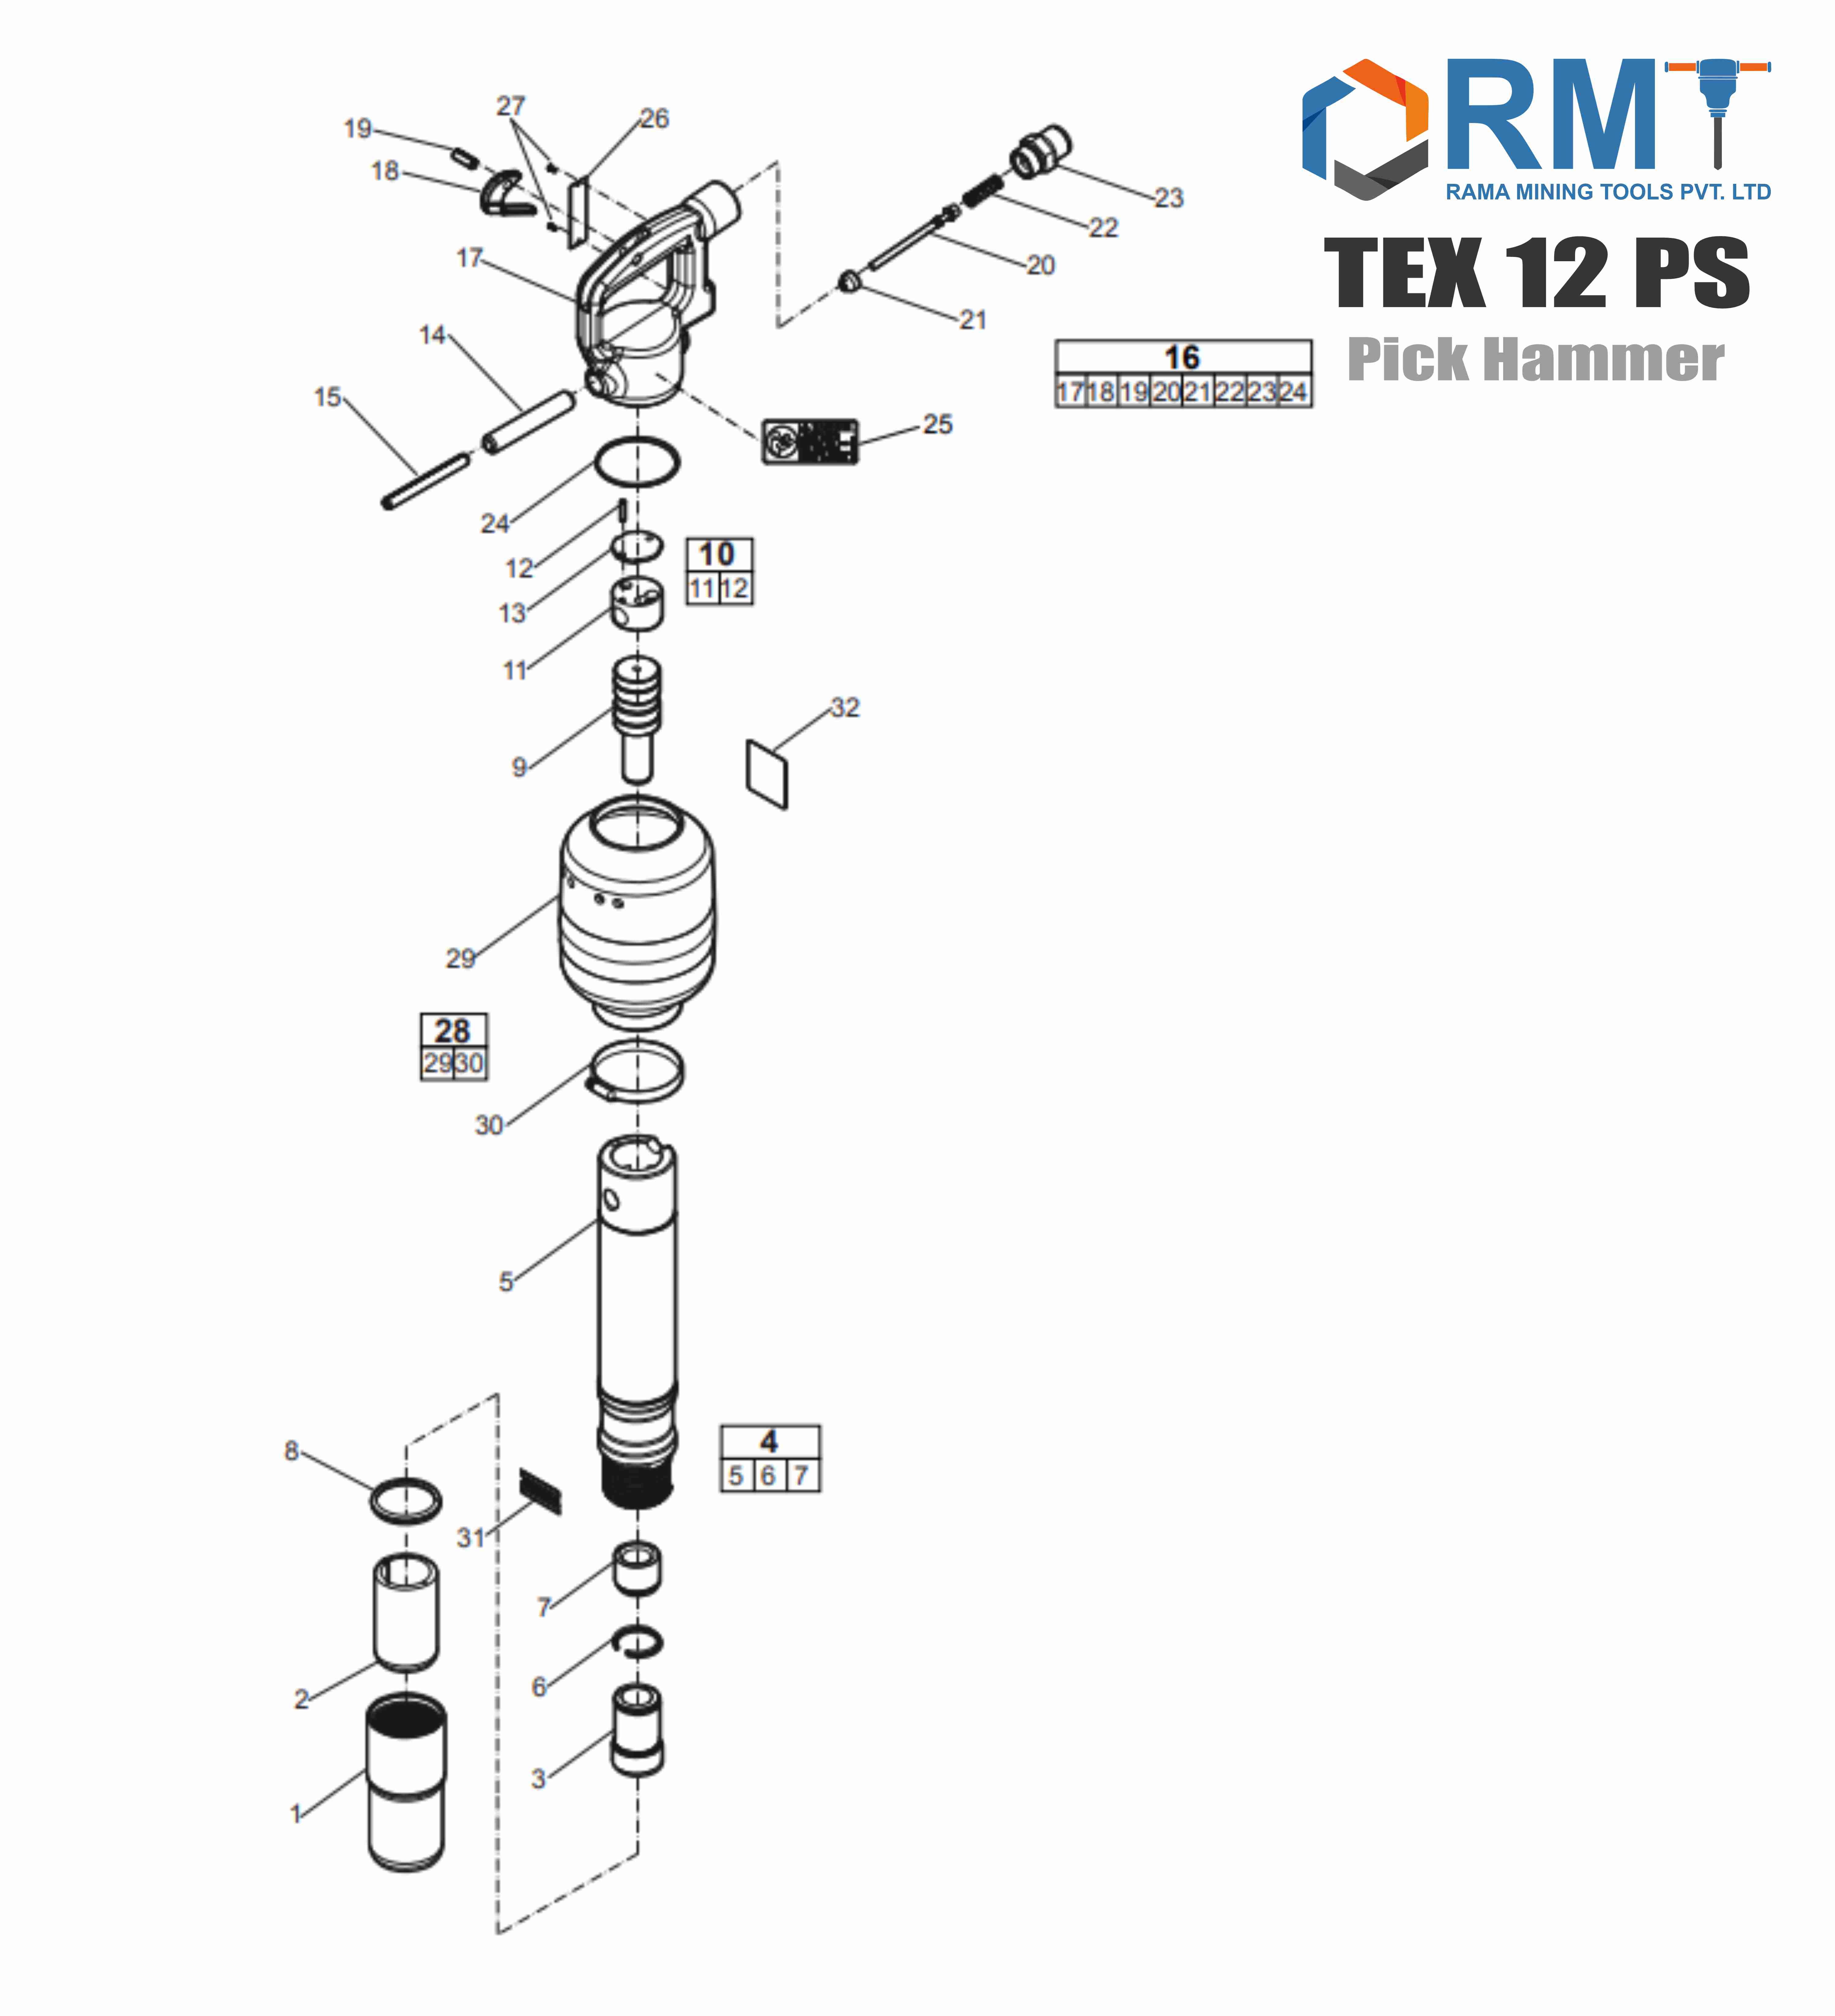 TEX 12 PS - Pick Hammer